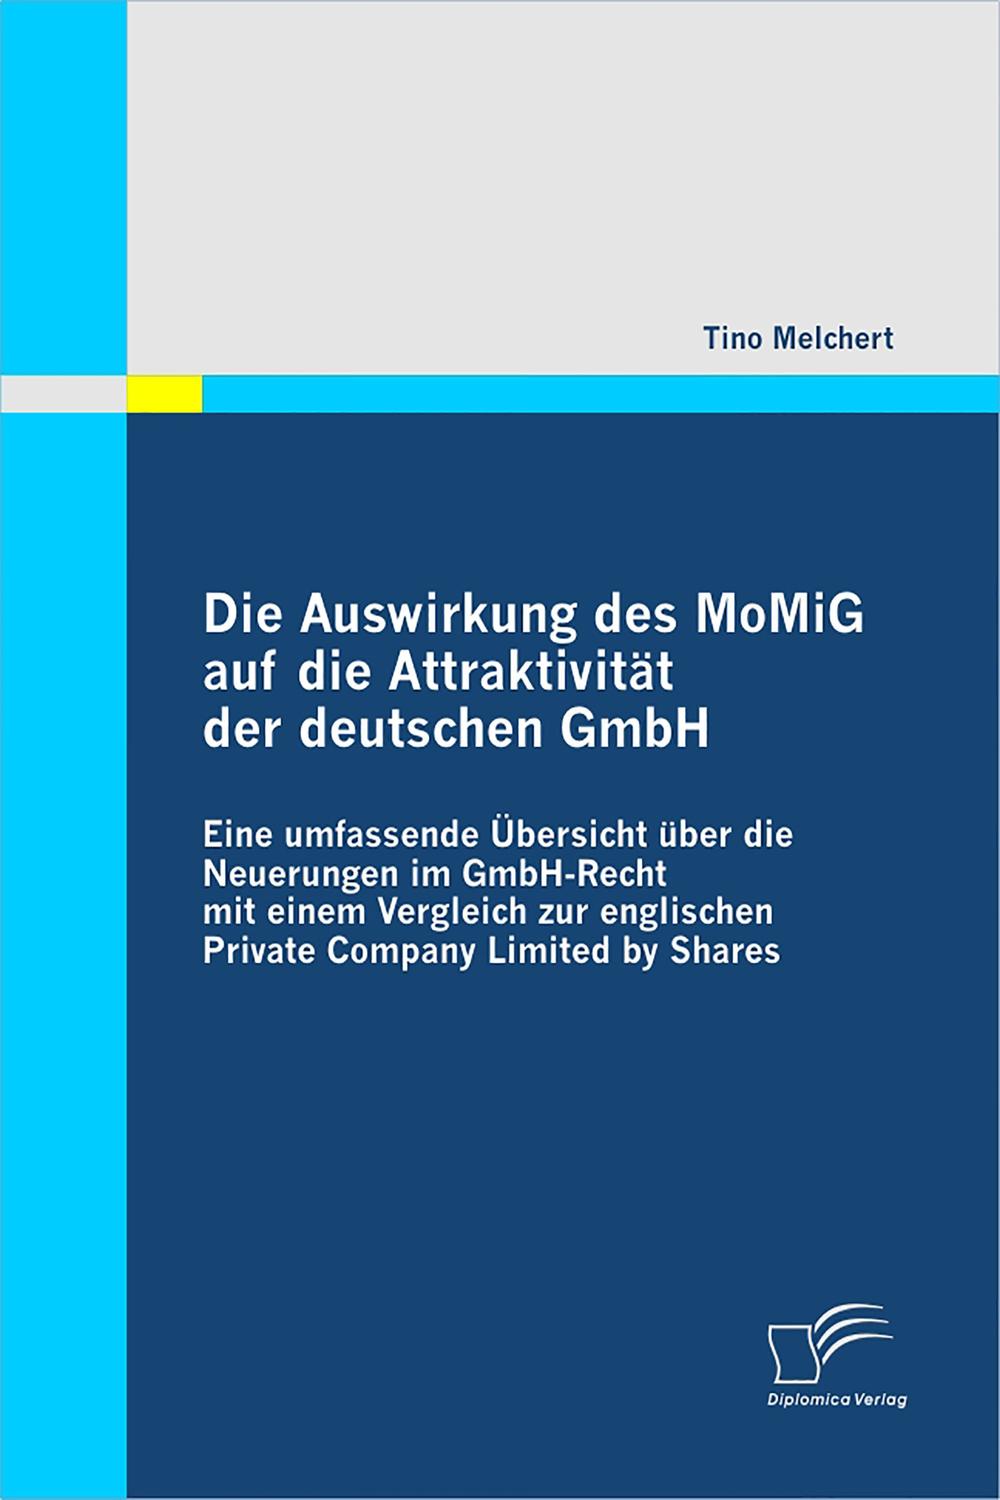 Die Auswirkung des MoMiG auf die Attraktivität der deutschen GmbH - Tino Melchert